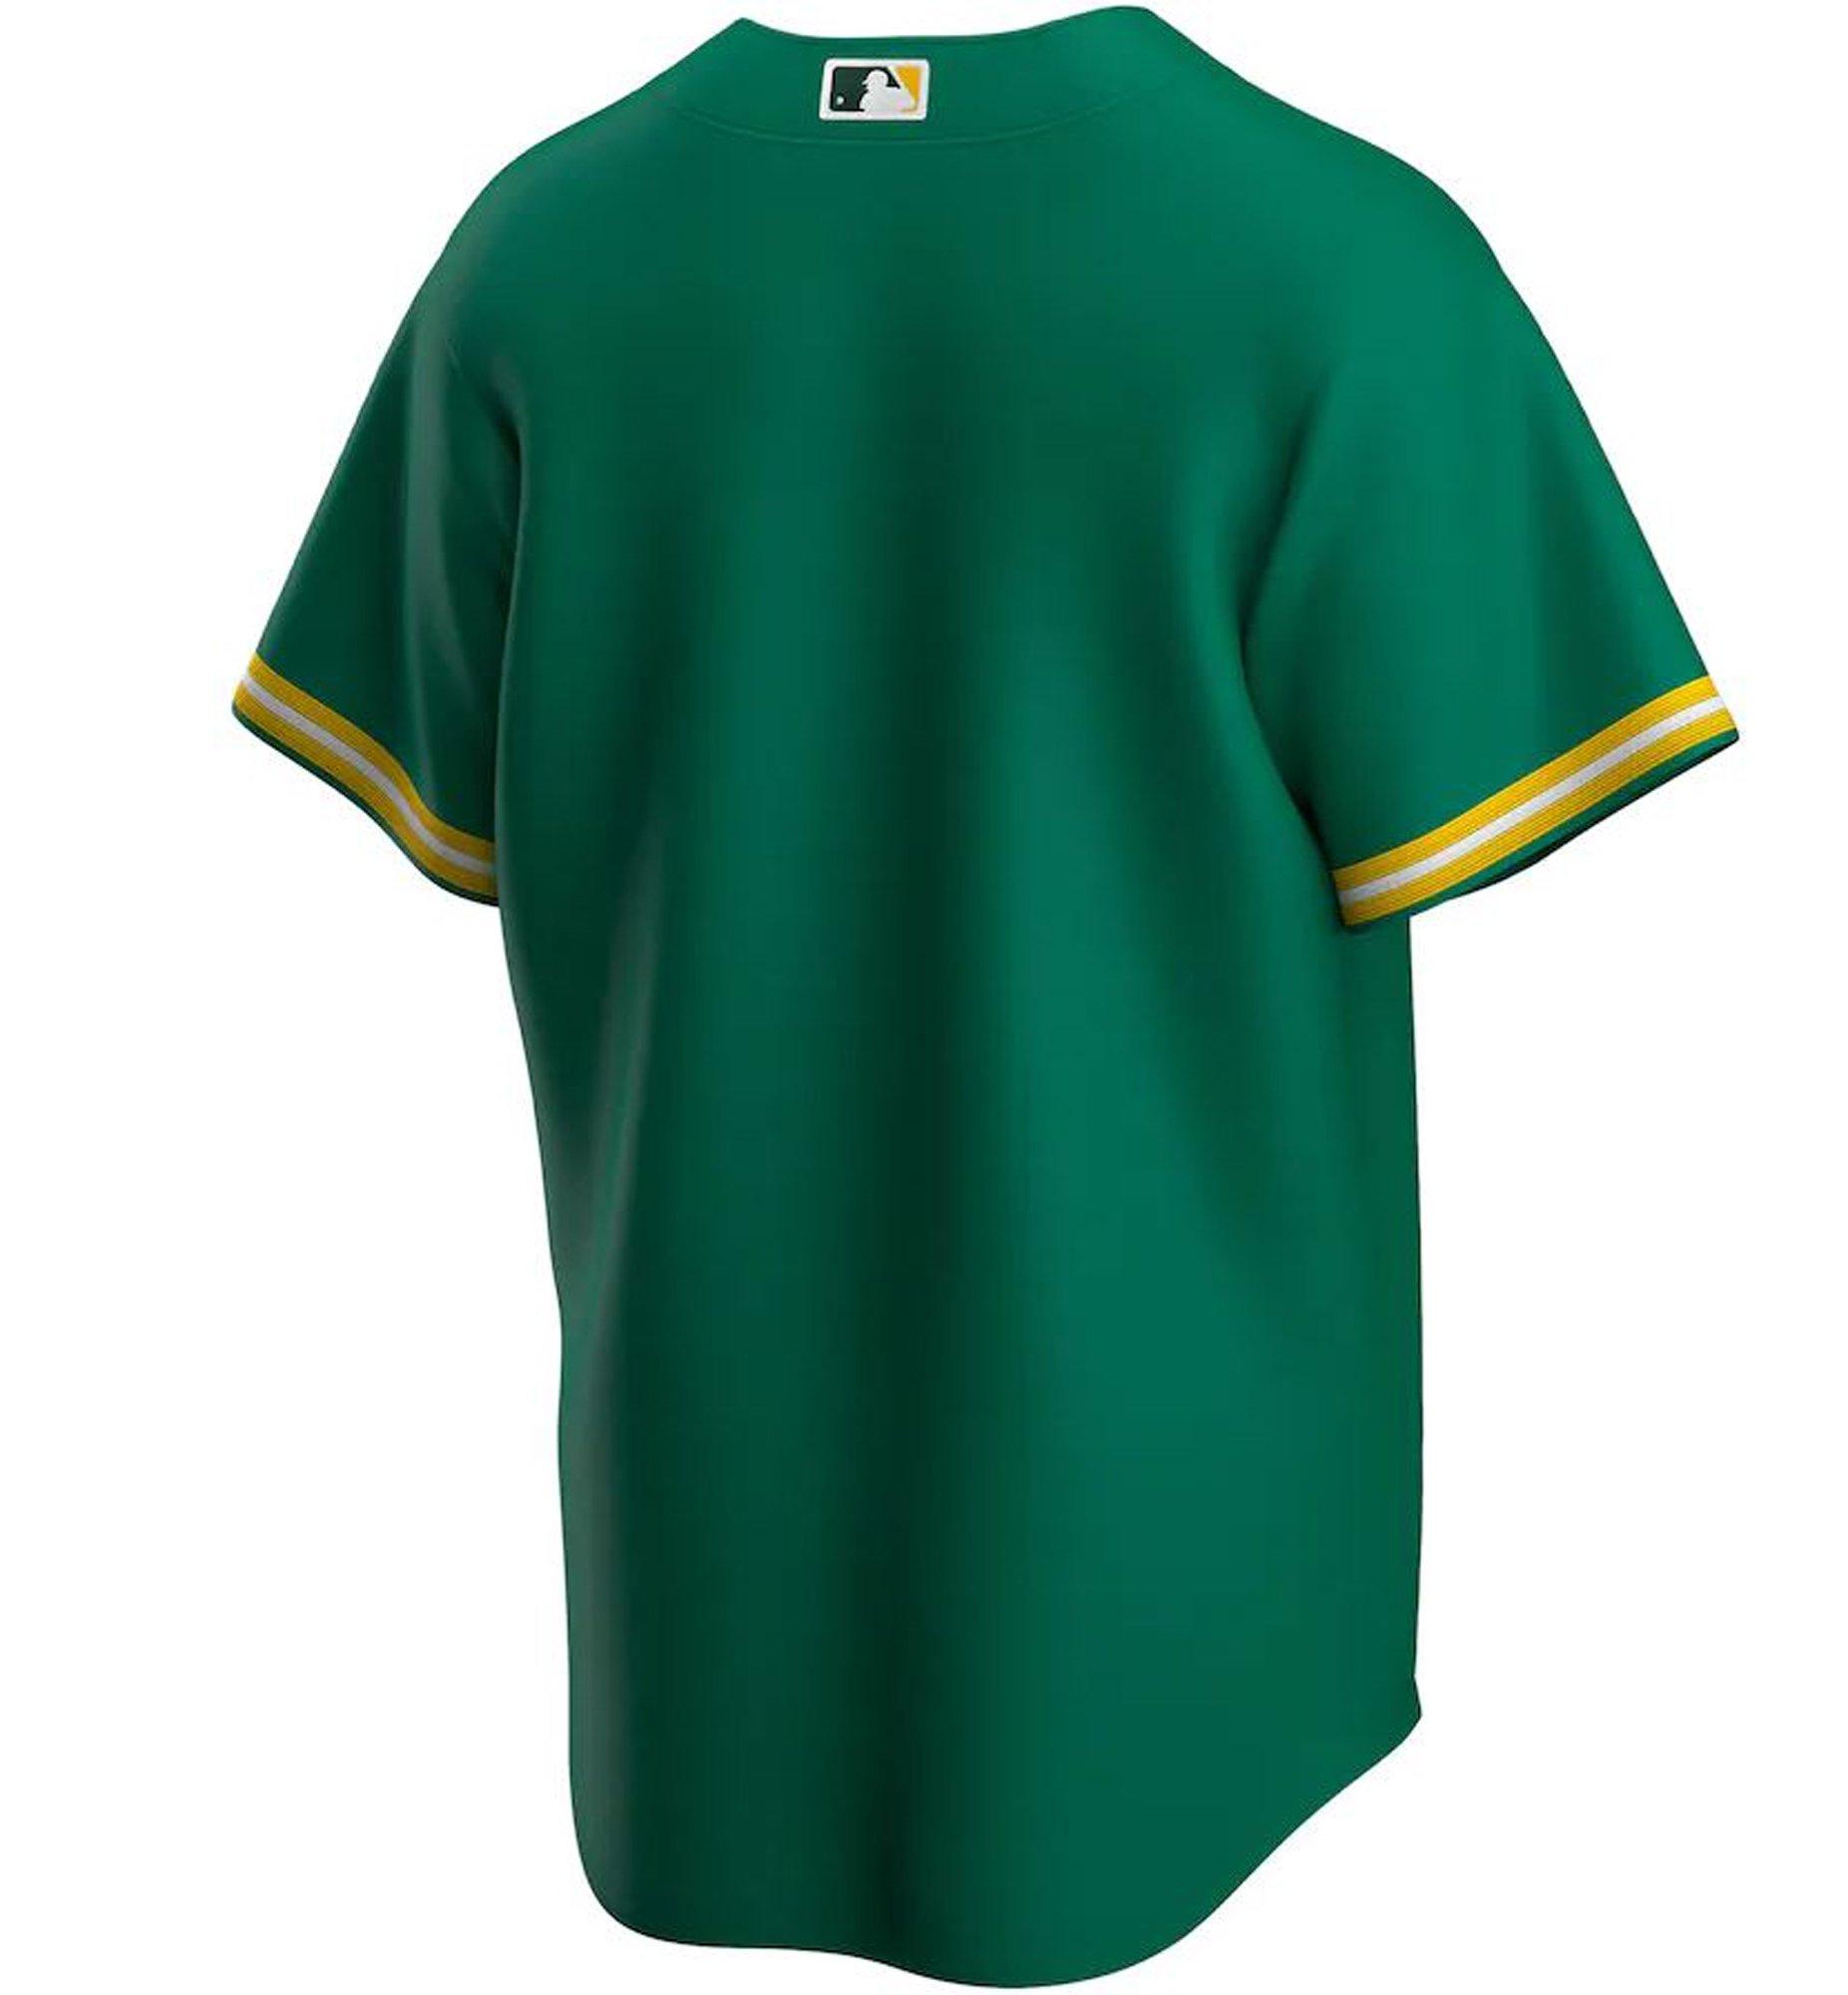 Free Oakland Athletics Authentic Personalized Jersey White Gray Green Yellow  Baseball Jersey Customize - AliExpress